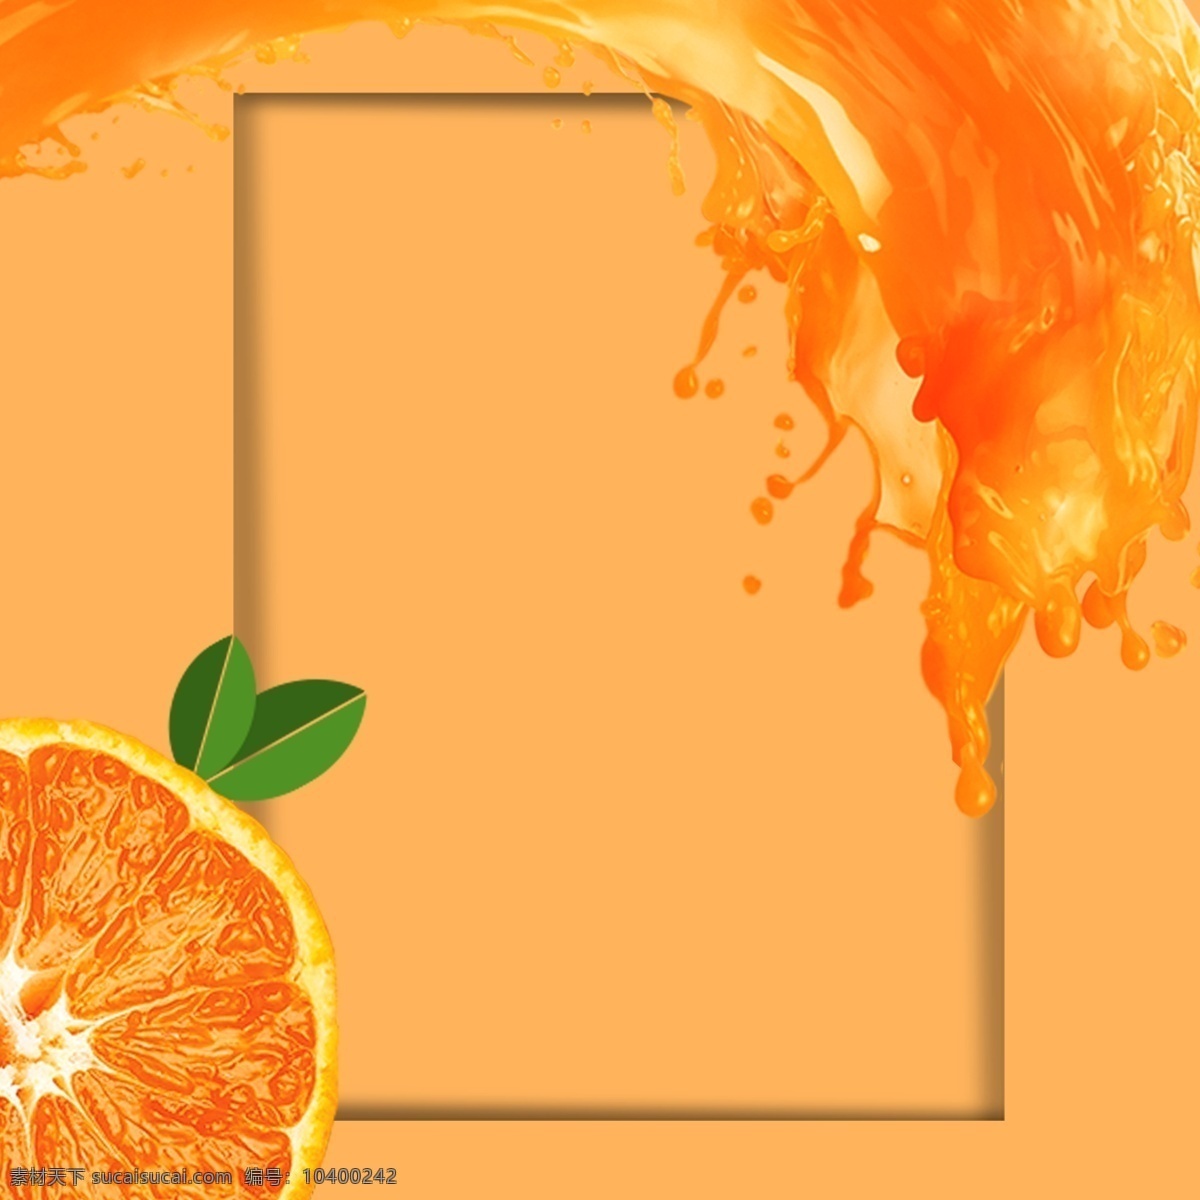 广场 橙 橙汁 橙色 背景